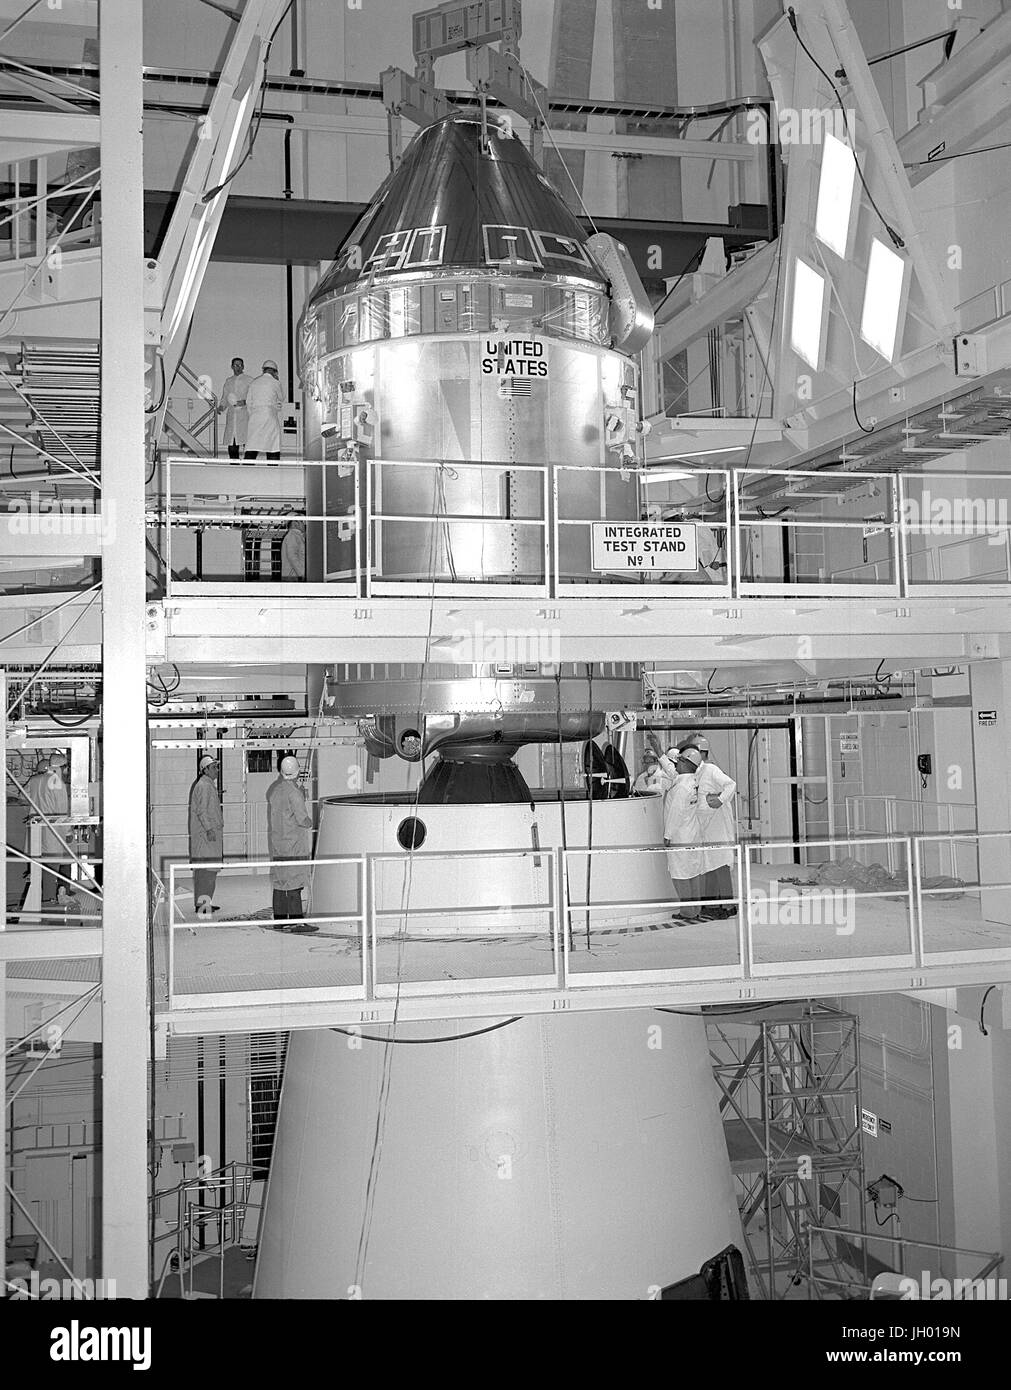 L'Apollo 11 Comando/Service Module (CSM) vengono accoppiati per il Saturn V Modulo Lunare Adapter.Command modulo Modulo Servizio CSM Apollo 11 Modulo Lunare adattatore. Foto NASA questa stampa di archiviazione è disponibile nei seguenti formati: 8' x 10' $15.95 w/ spedizione gratuita 11' x 14' $23,95 w/ spedizione gratuita 16' x 20' $59.95 w/ spedizione gratuita 20' x 24' $99,95 w/ SPEDIZIONE GRATUITA * American Photoarchive filigrana non apparirà sulla vostra stampa. Foto Stock